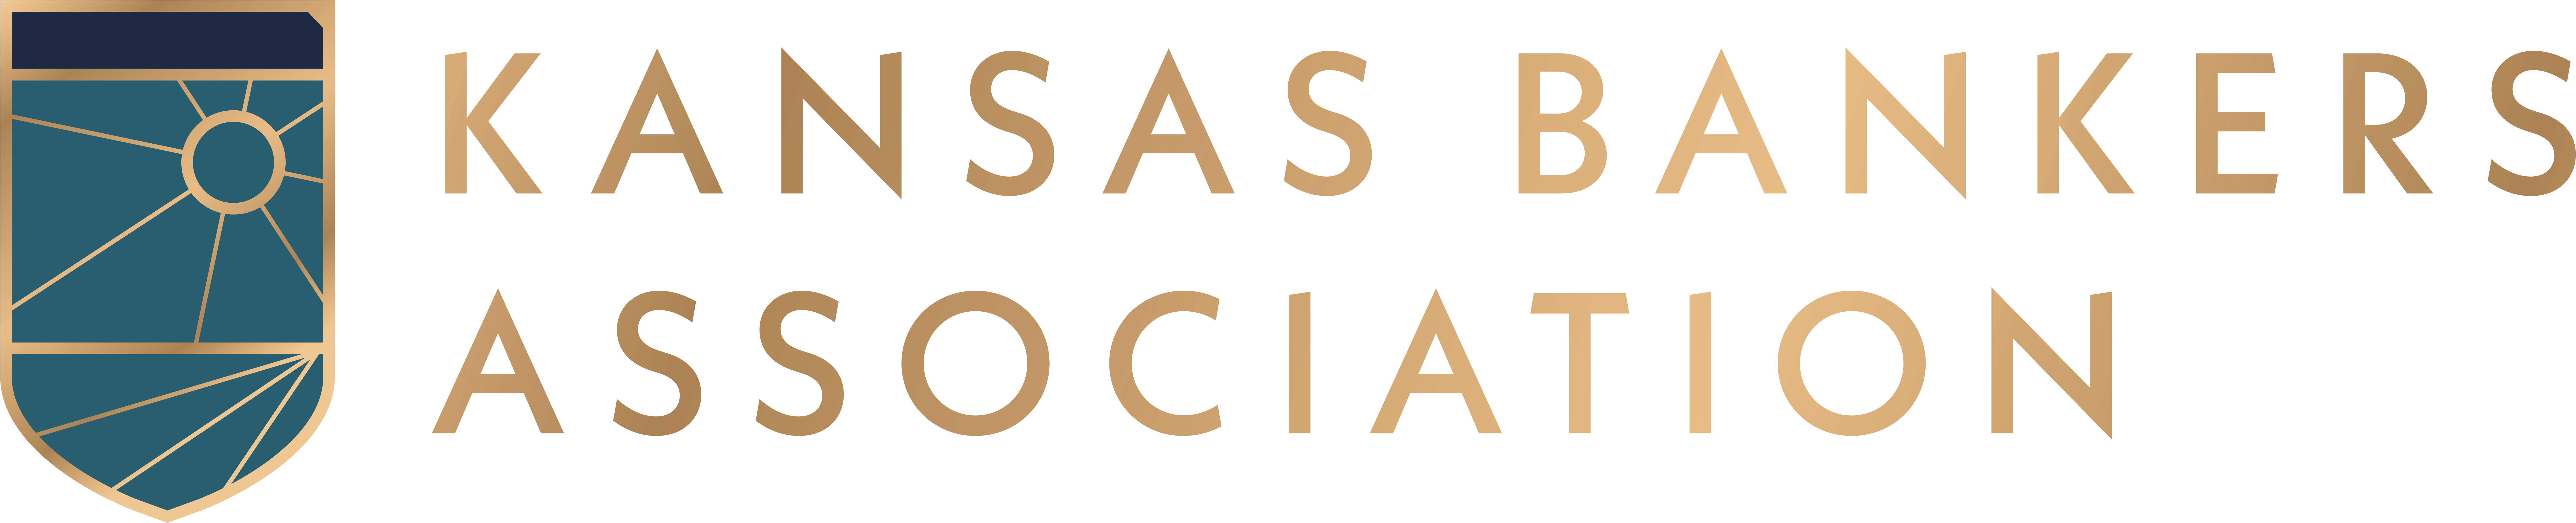 Kansas Bankers Association logo